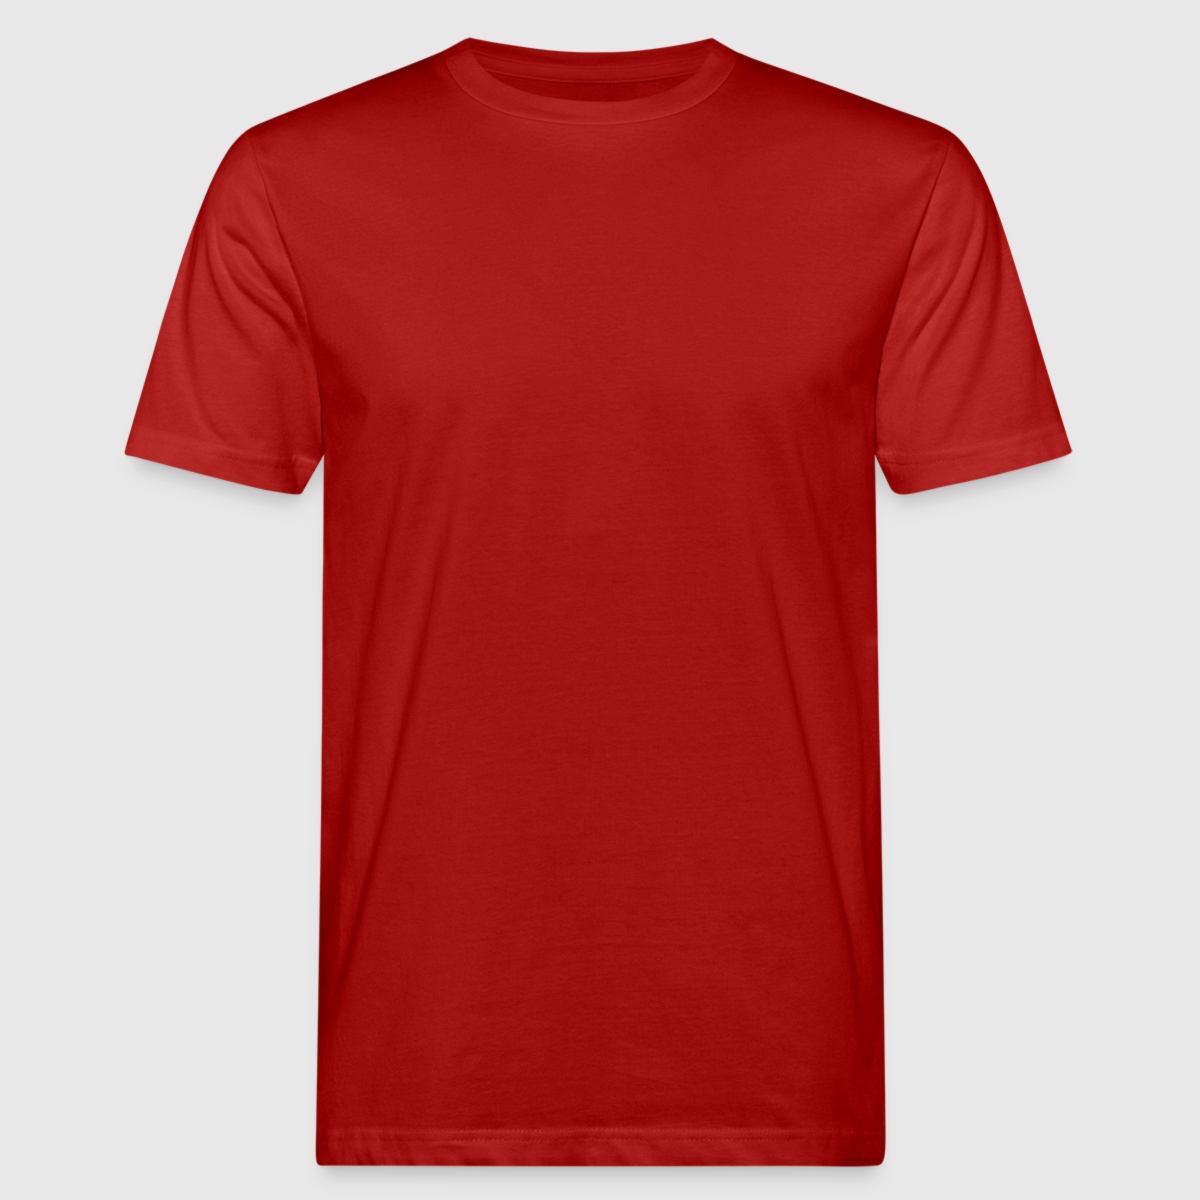 Männer Bio-T-Shirt - Vorne